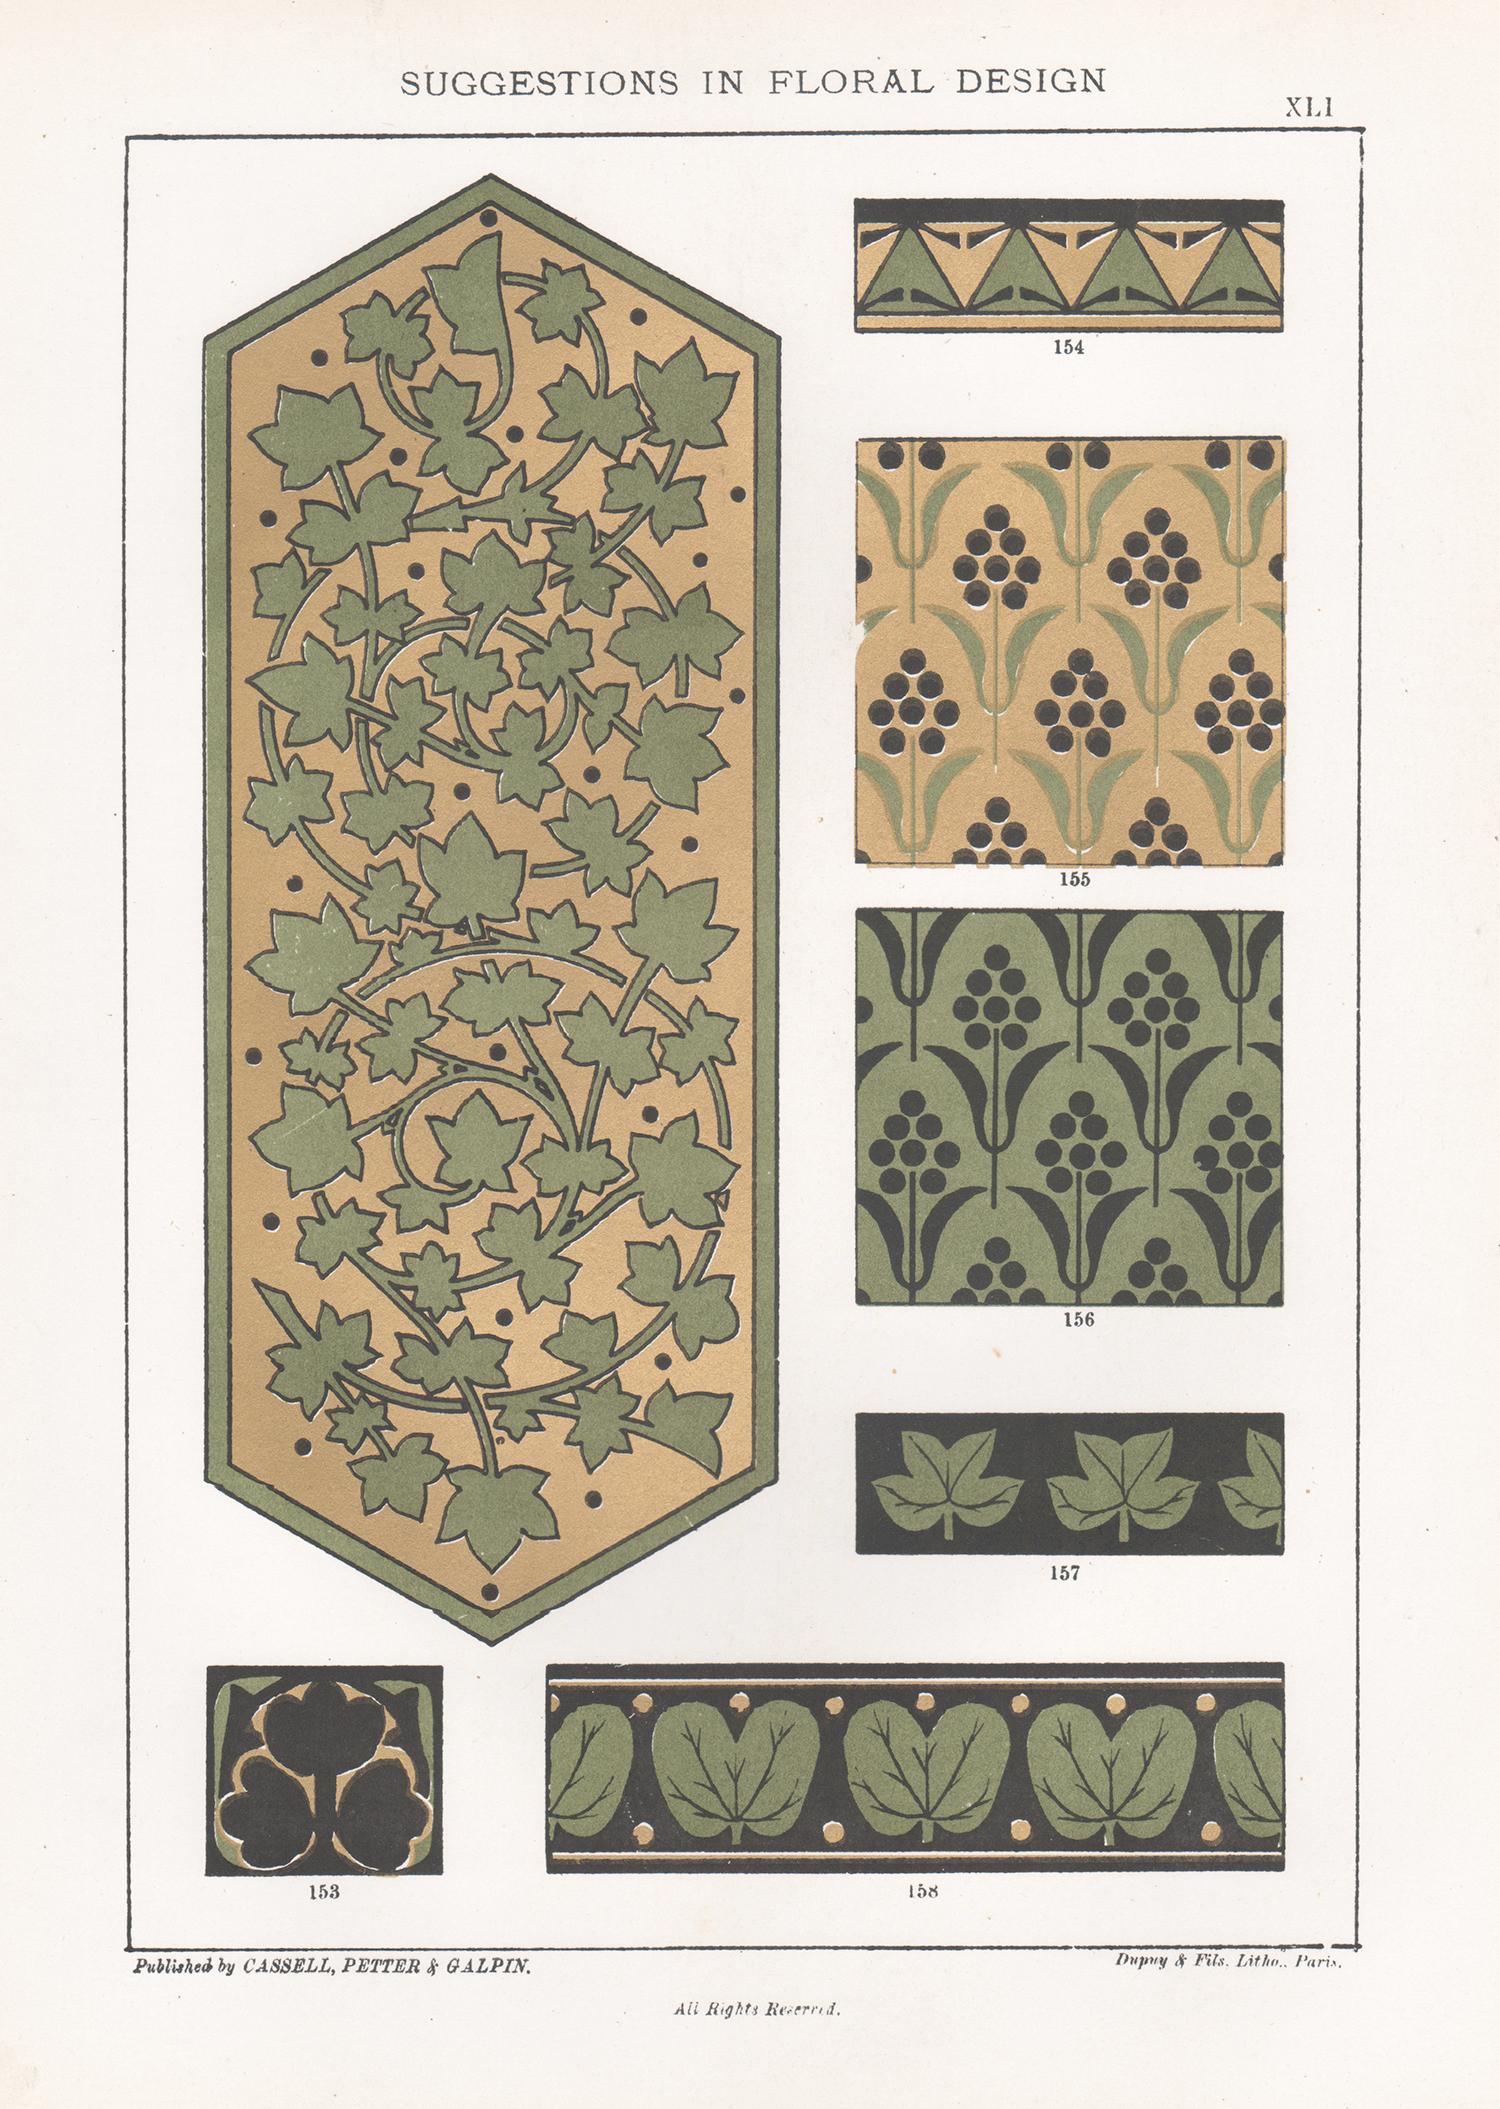 Interior Print Frederick William Hulme - Suggestions en matière de design floral, Frederick Hulme, chromolithographie du XIXe siècle